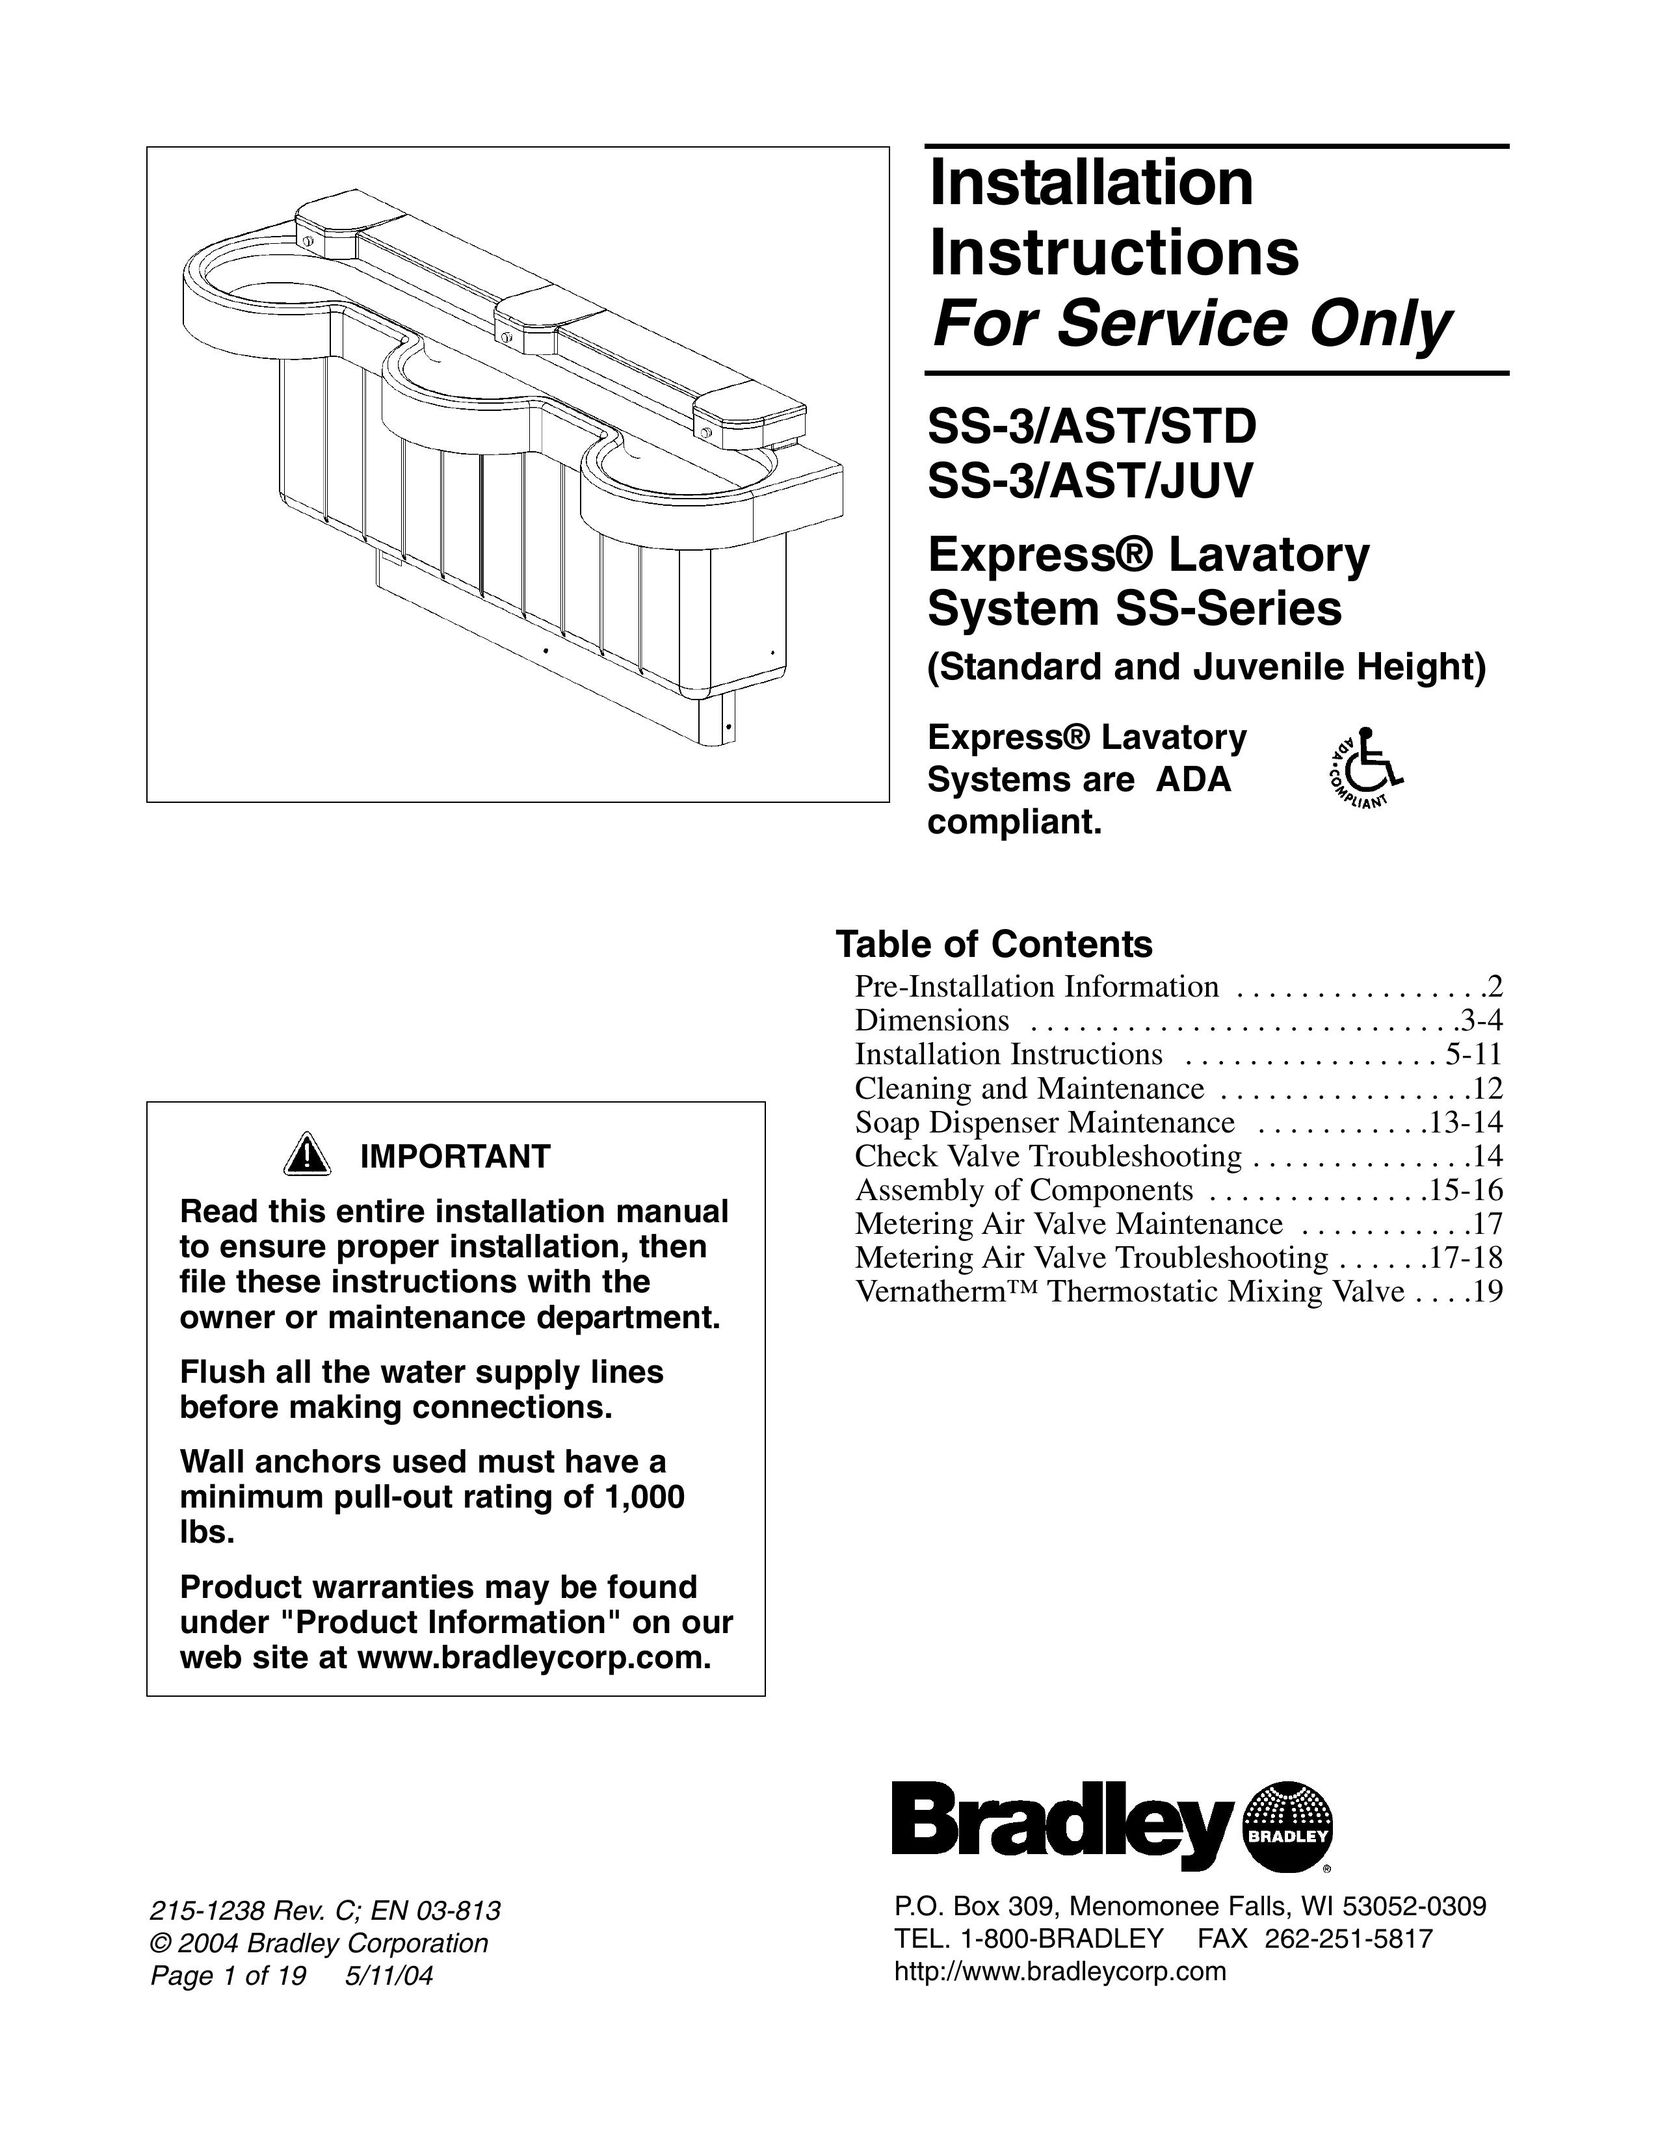 Bradley Smoker SS-3/AST/JUV Plumbing Product User Manual